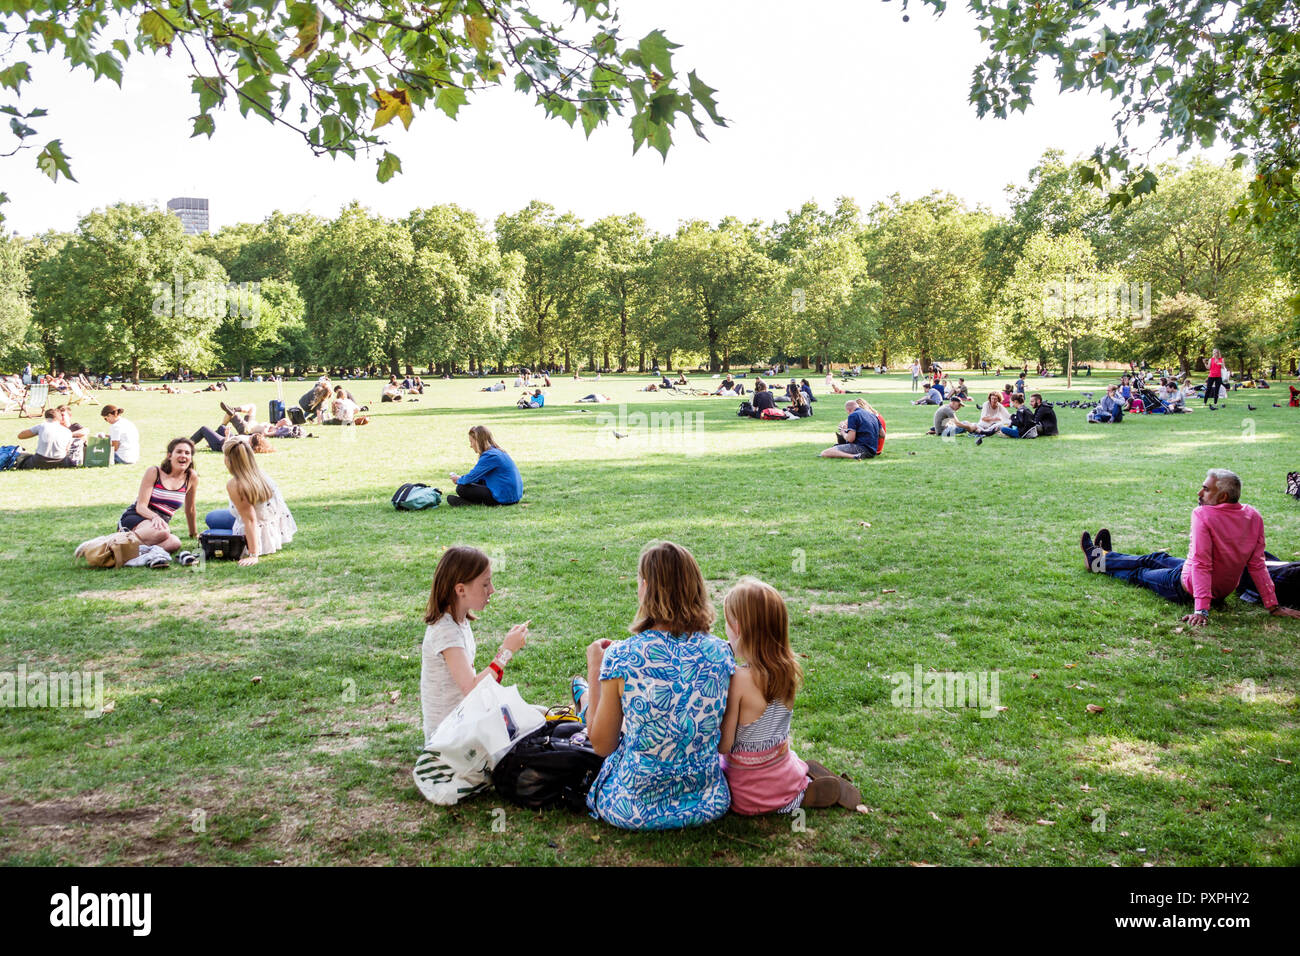 London England, Großbritannien, Green Park, Ritz Corner, Royal Parks, Rasen, im Freien, Grünfläche, auf Gras sitzen, Frau weibliche Frauen, Mädchen, Kinder Kinder Kinder Stockfoto